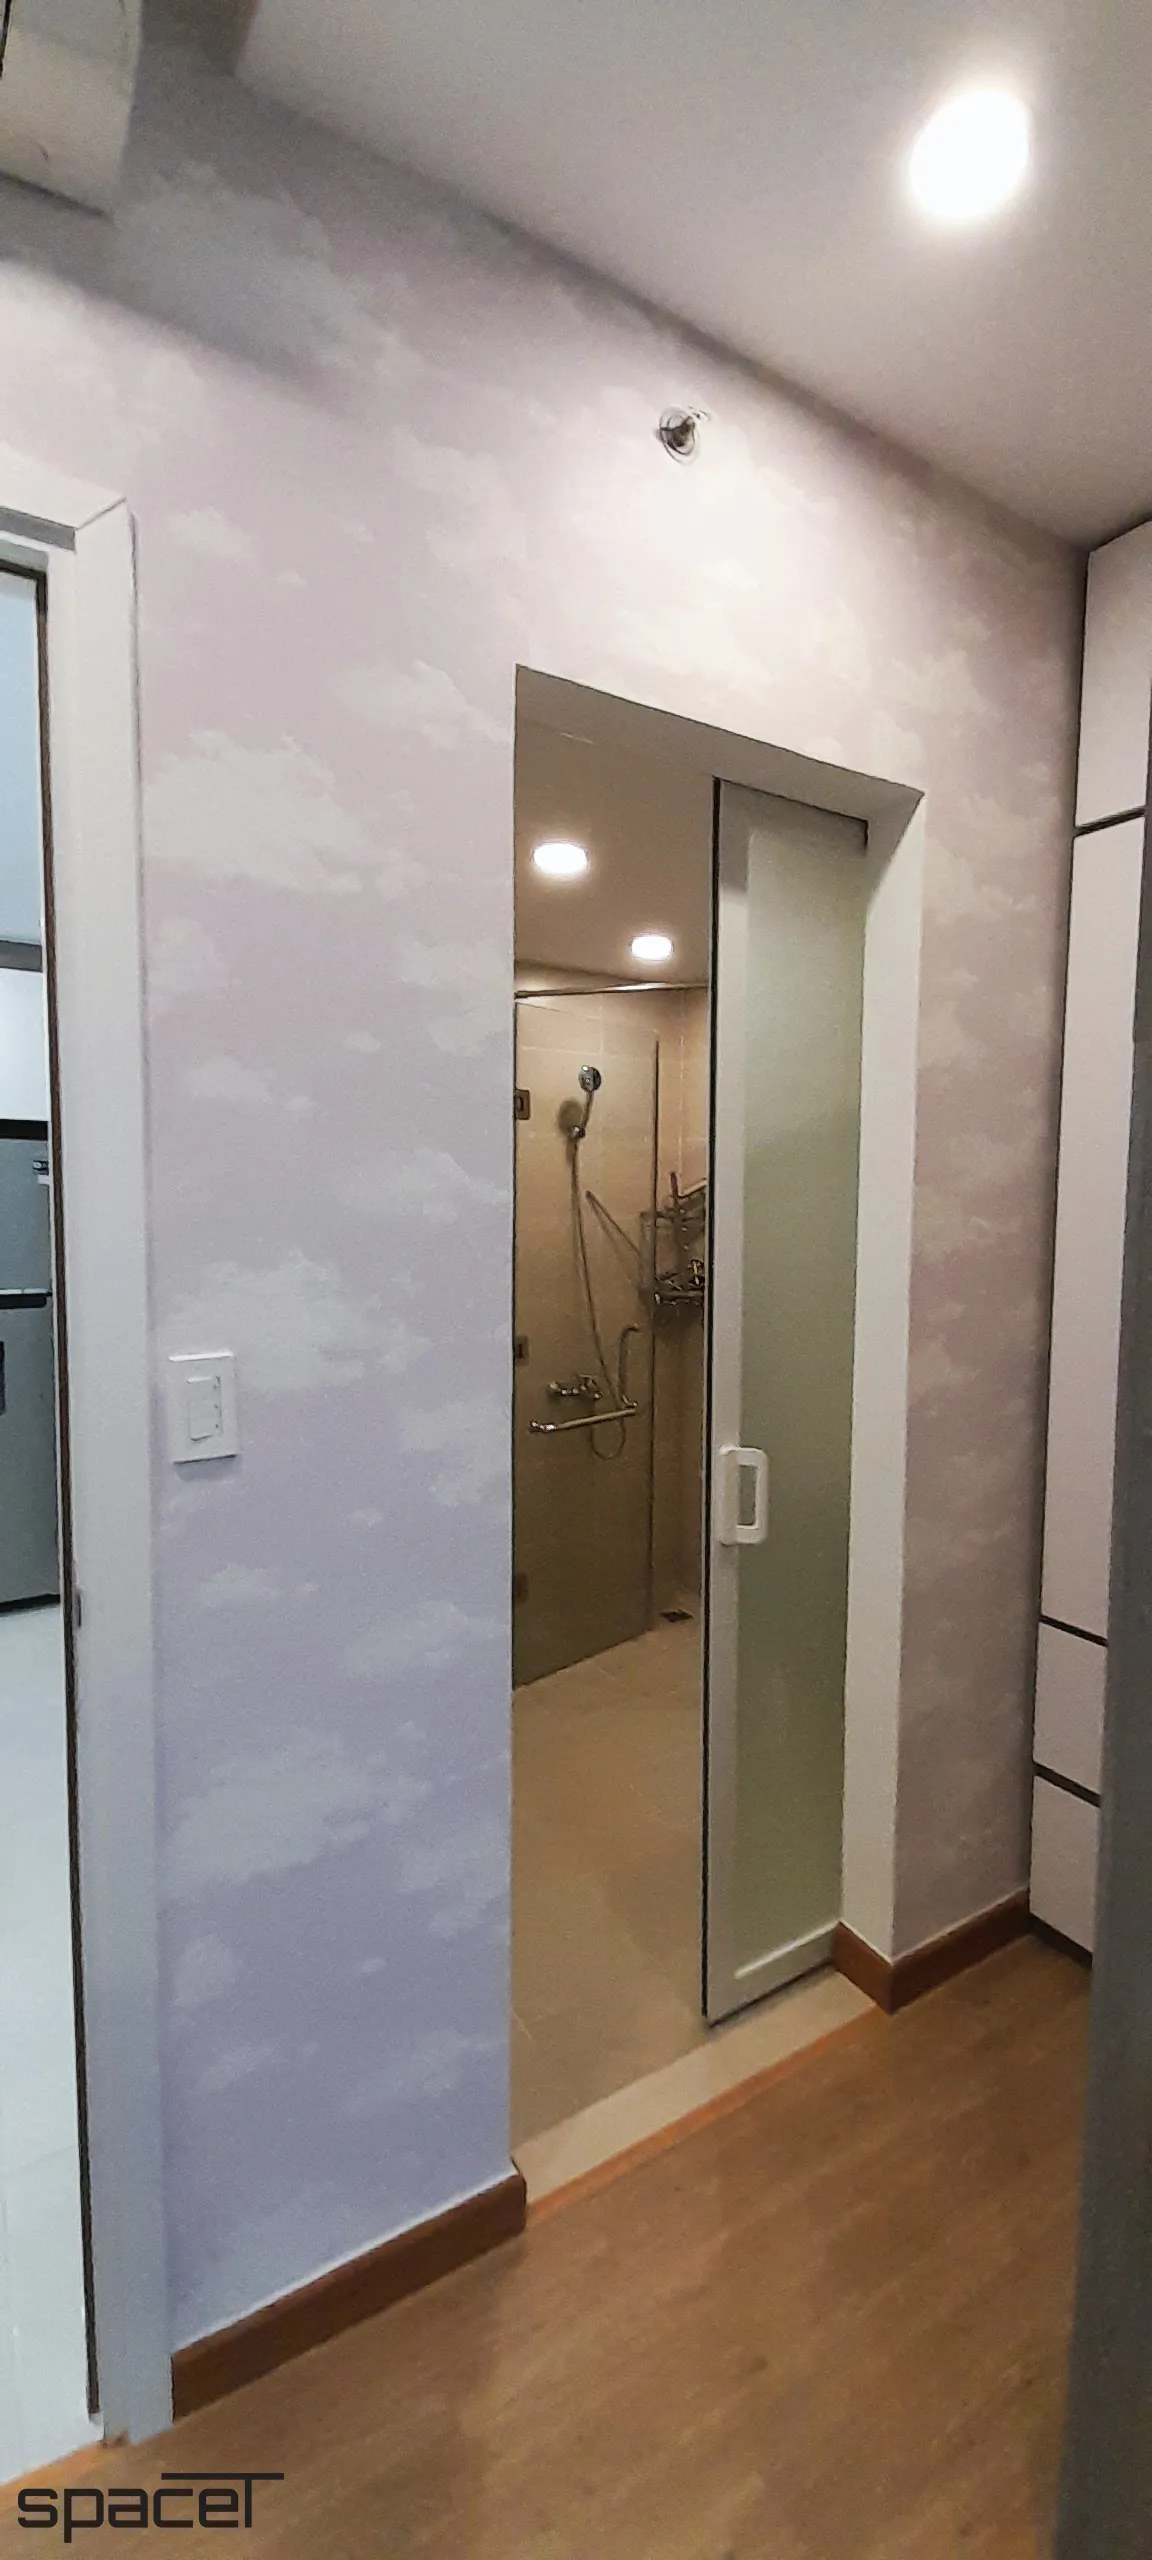 Hoàn thiện nội thất phòng tắm, nhà vệ sinh Căn hộ Masteri Thảo Điền Quận 2 phong cách hiện đại Modern